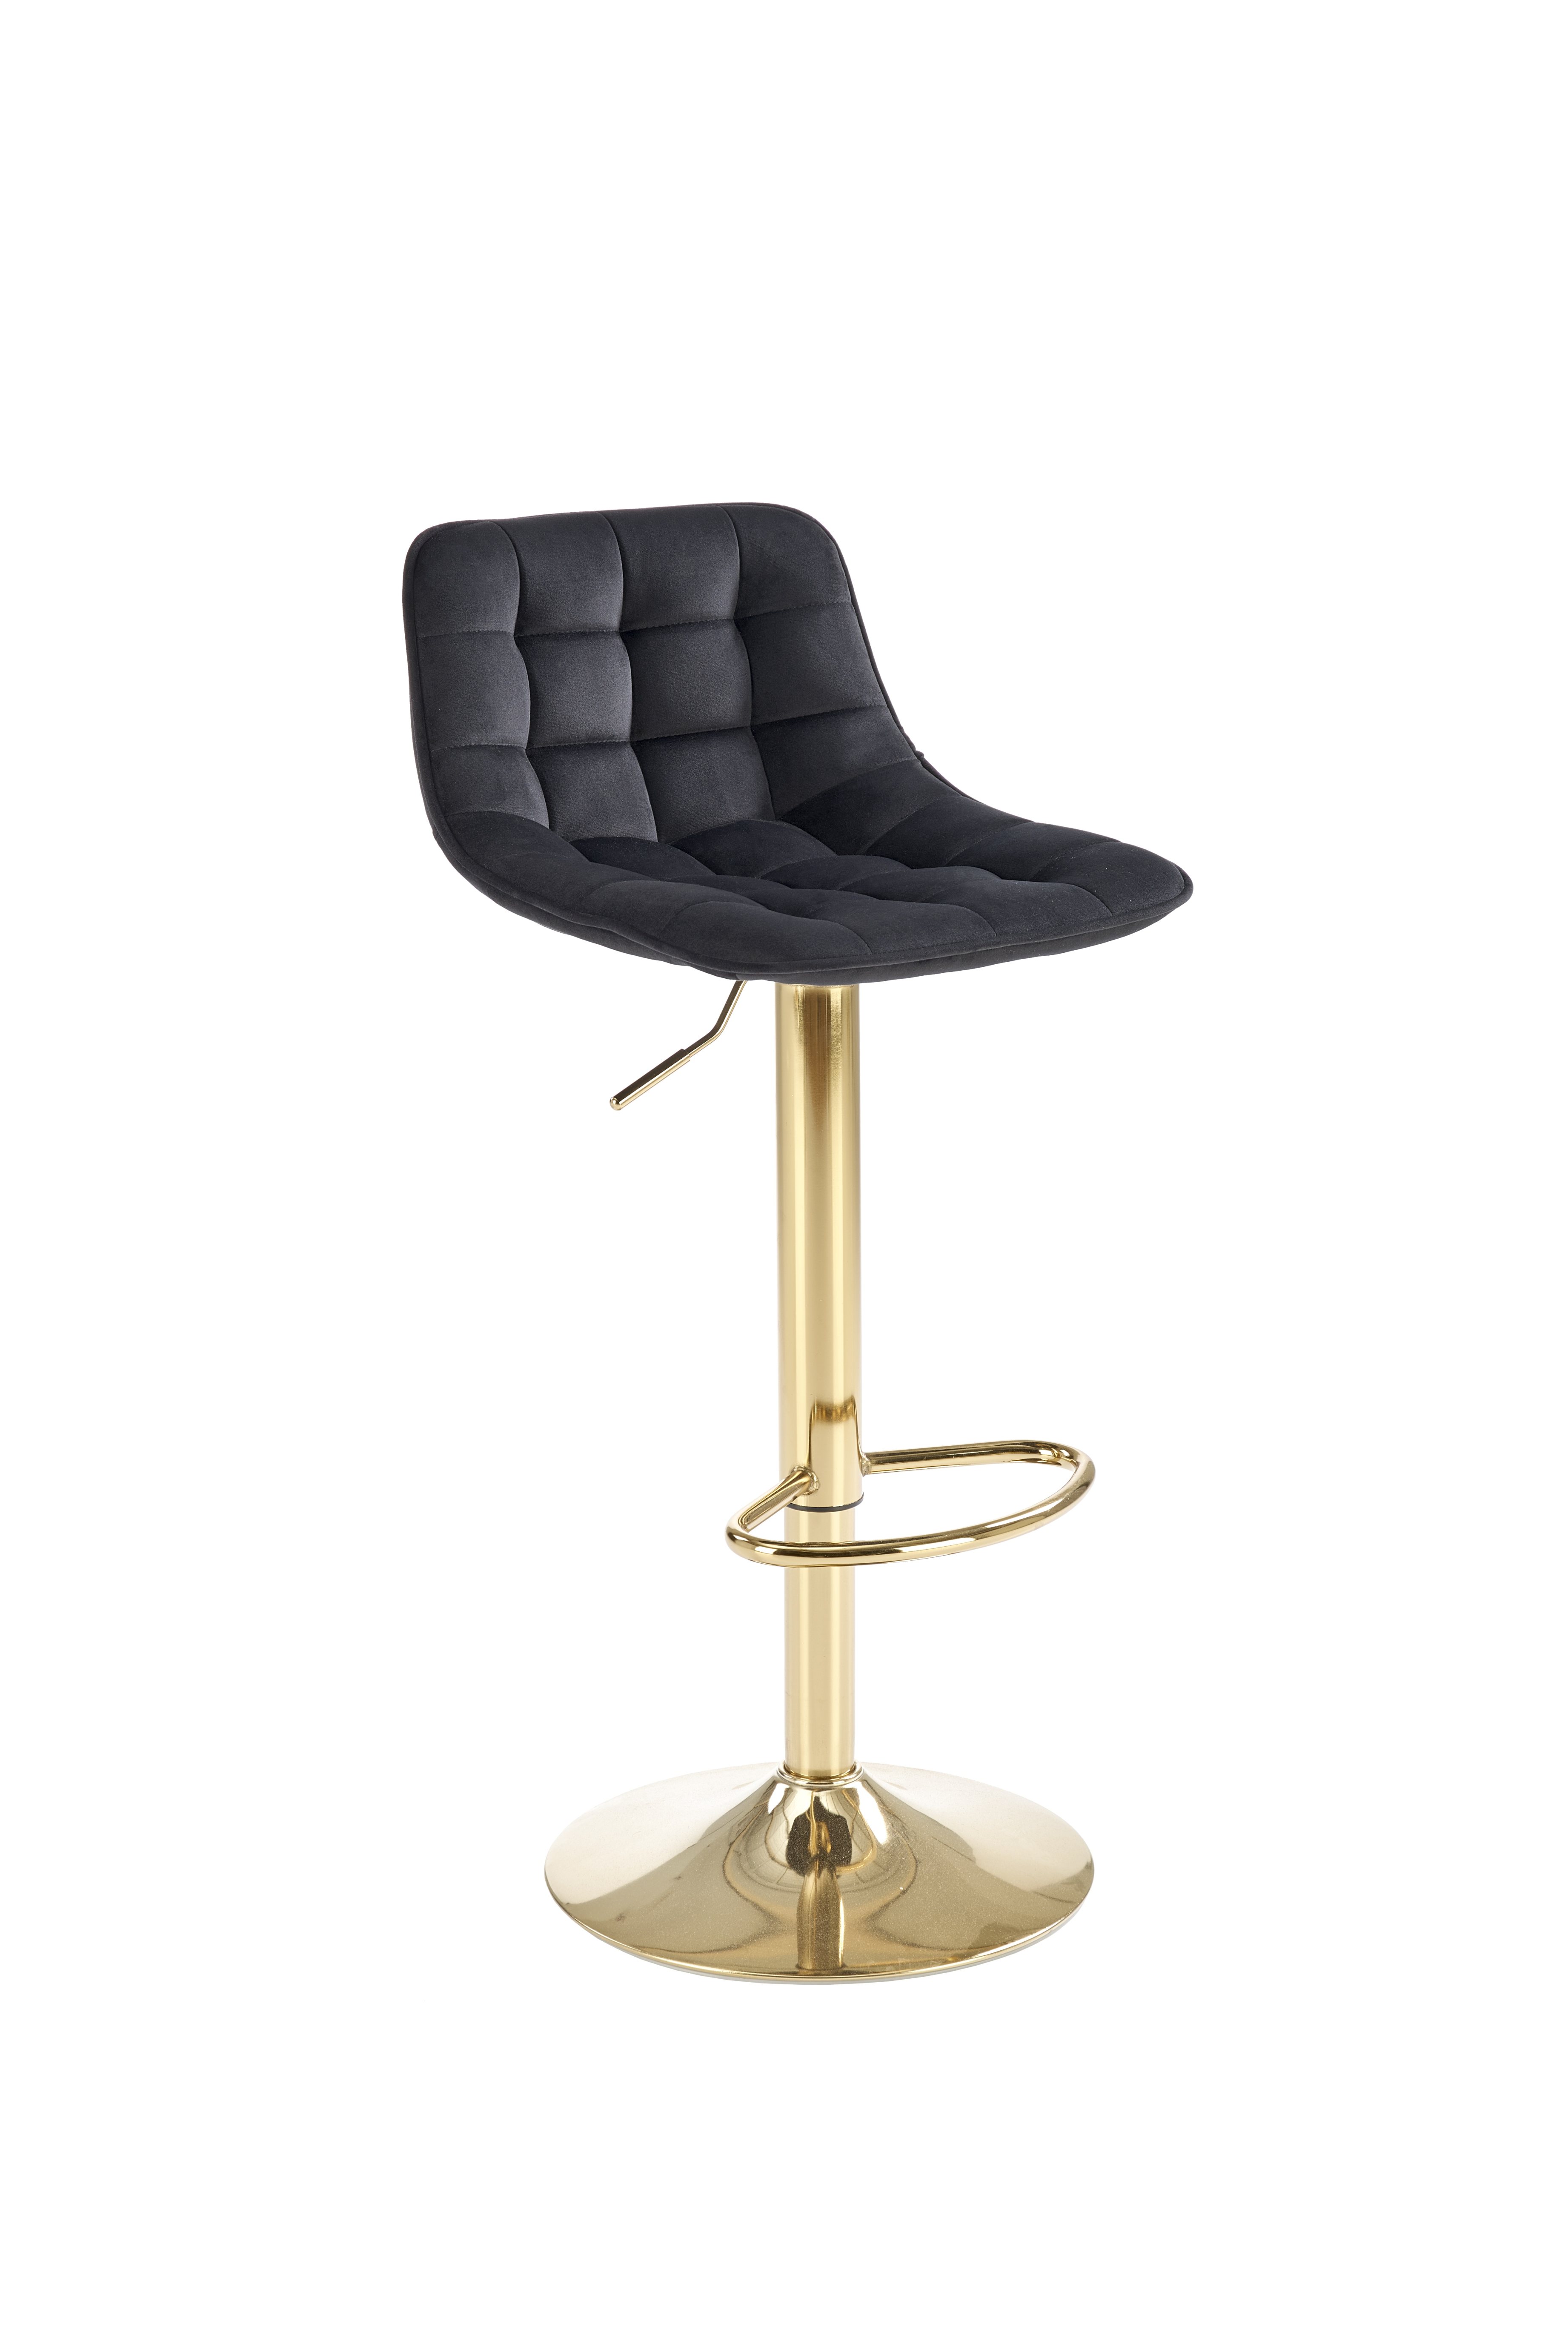 H120 Barová židle Nohy - zlaté, Sedák - Černý (1p=1szt) h120 Barová židle Nohy - zlaté, Sedák - Černý (1p=1szt)